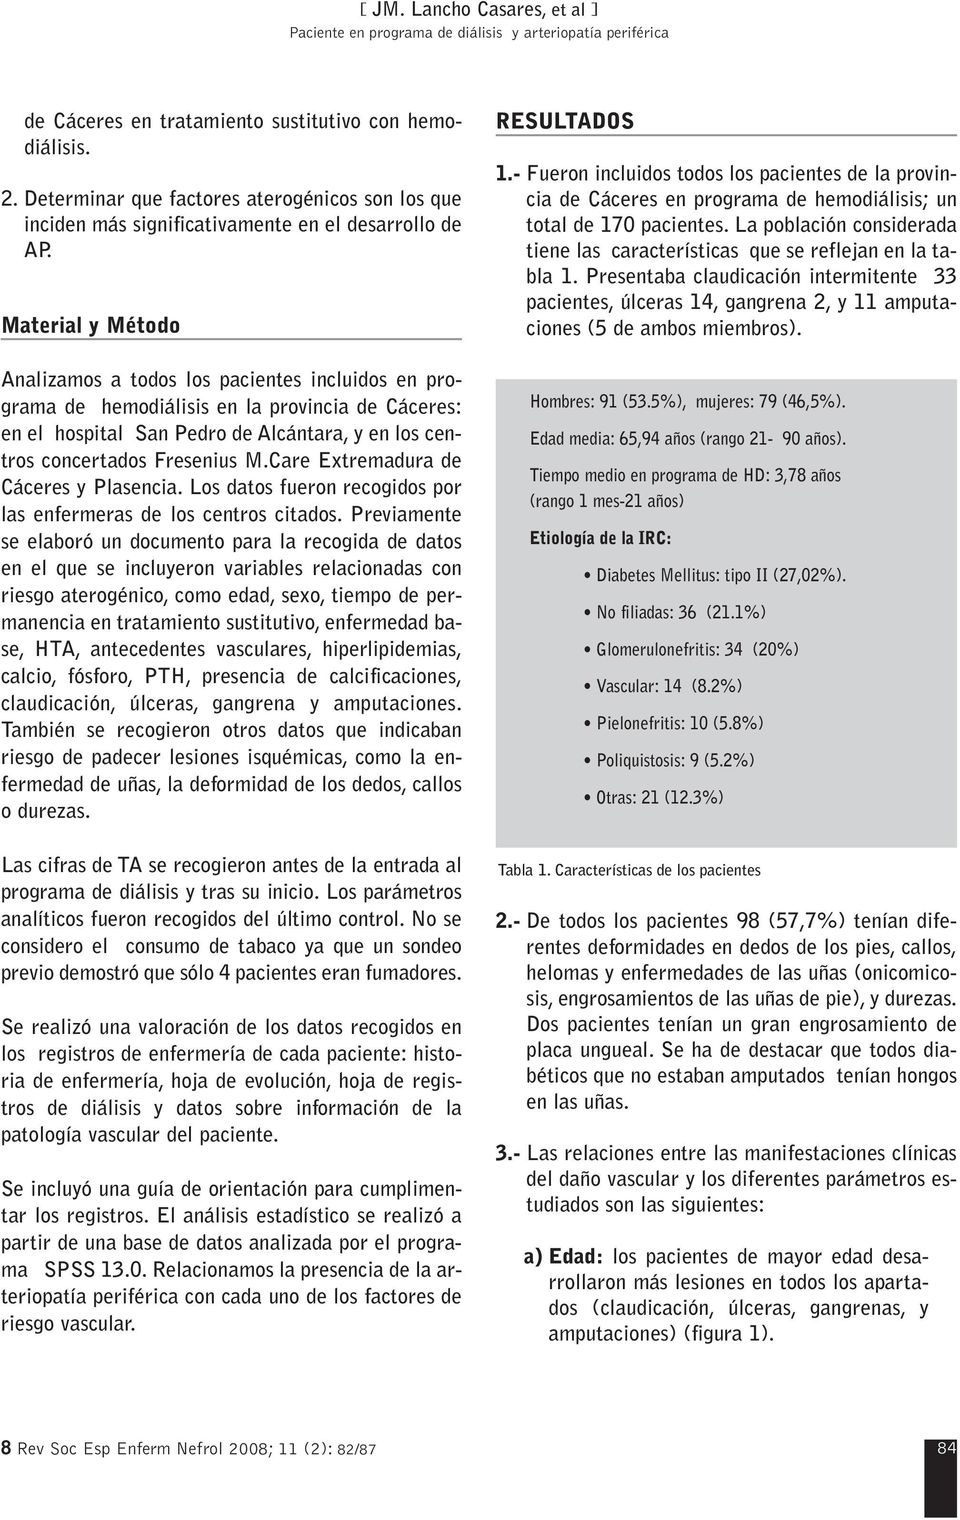 Care Extremadura de Cáceres y Plasencia. Los datos fueron recogidos por las enfermeras de los centros citados.